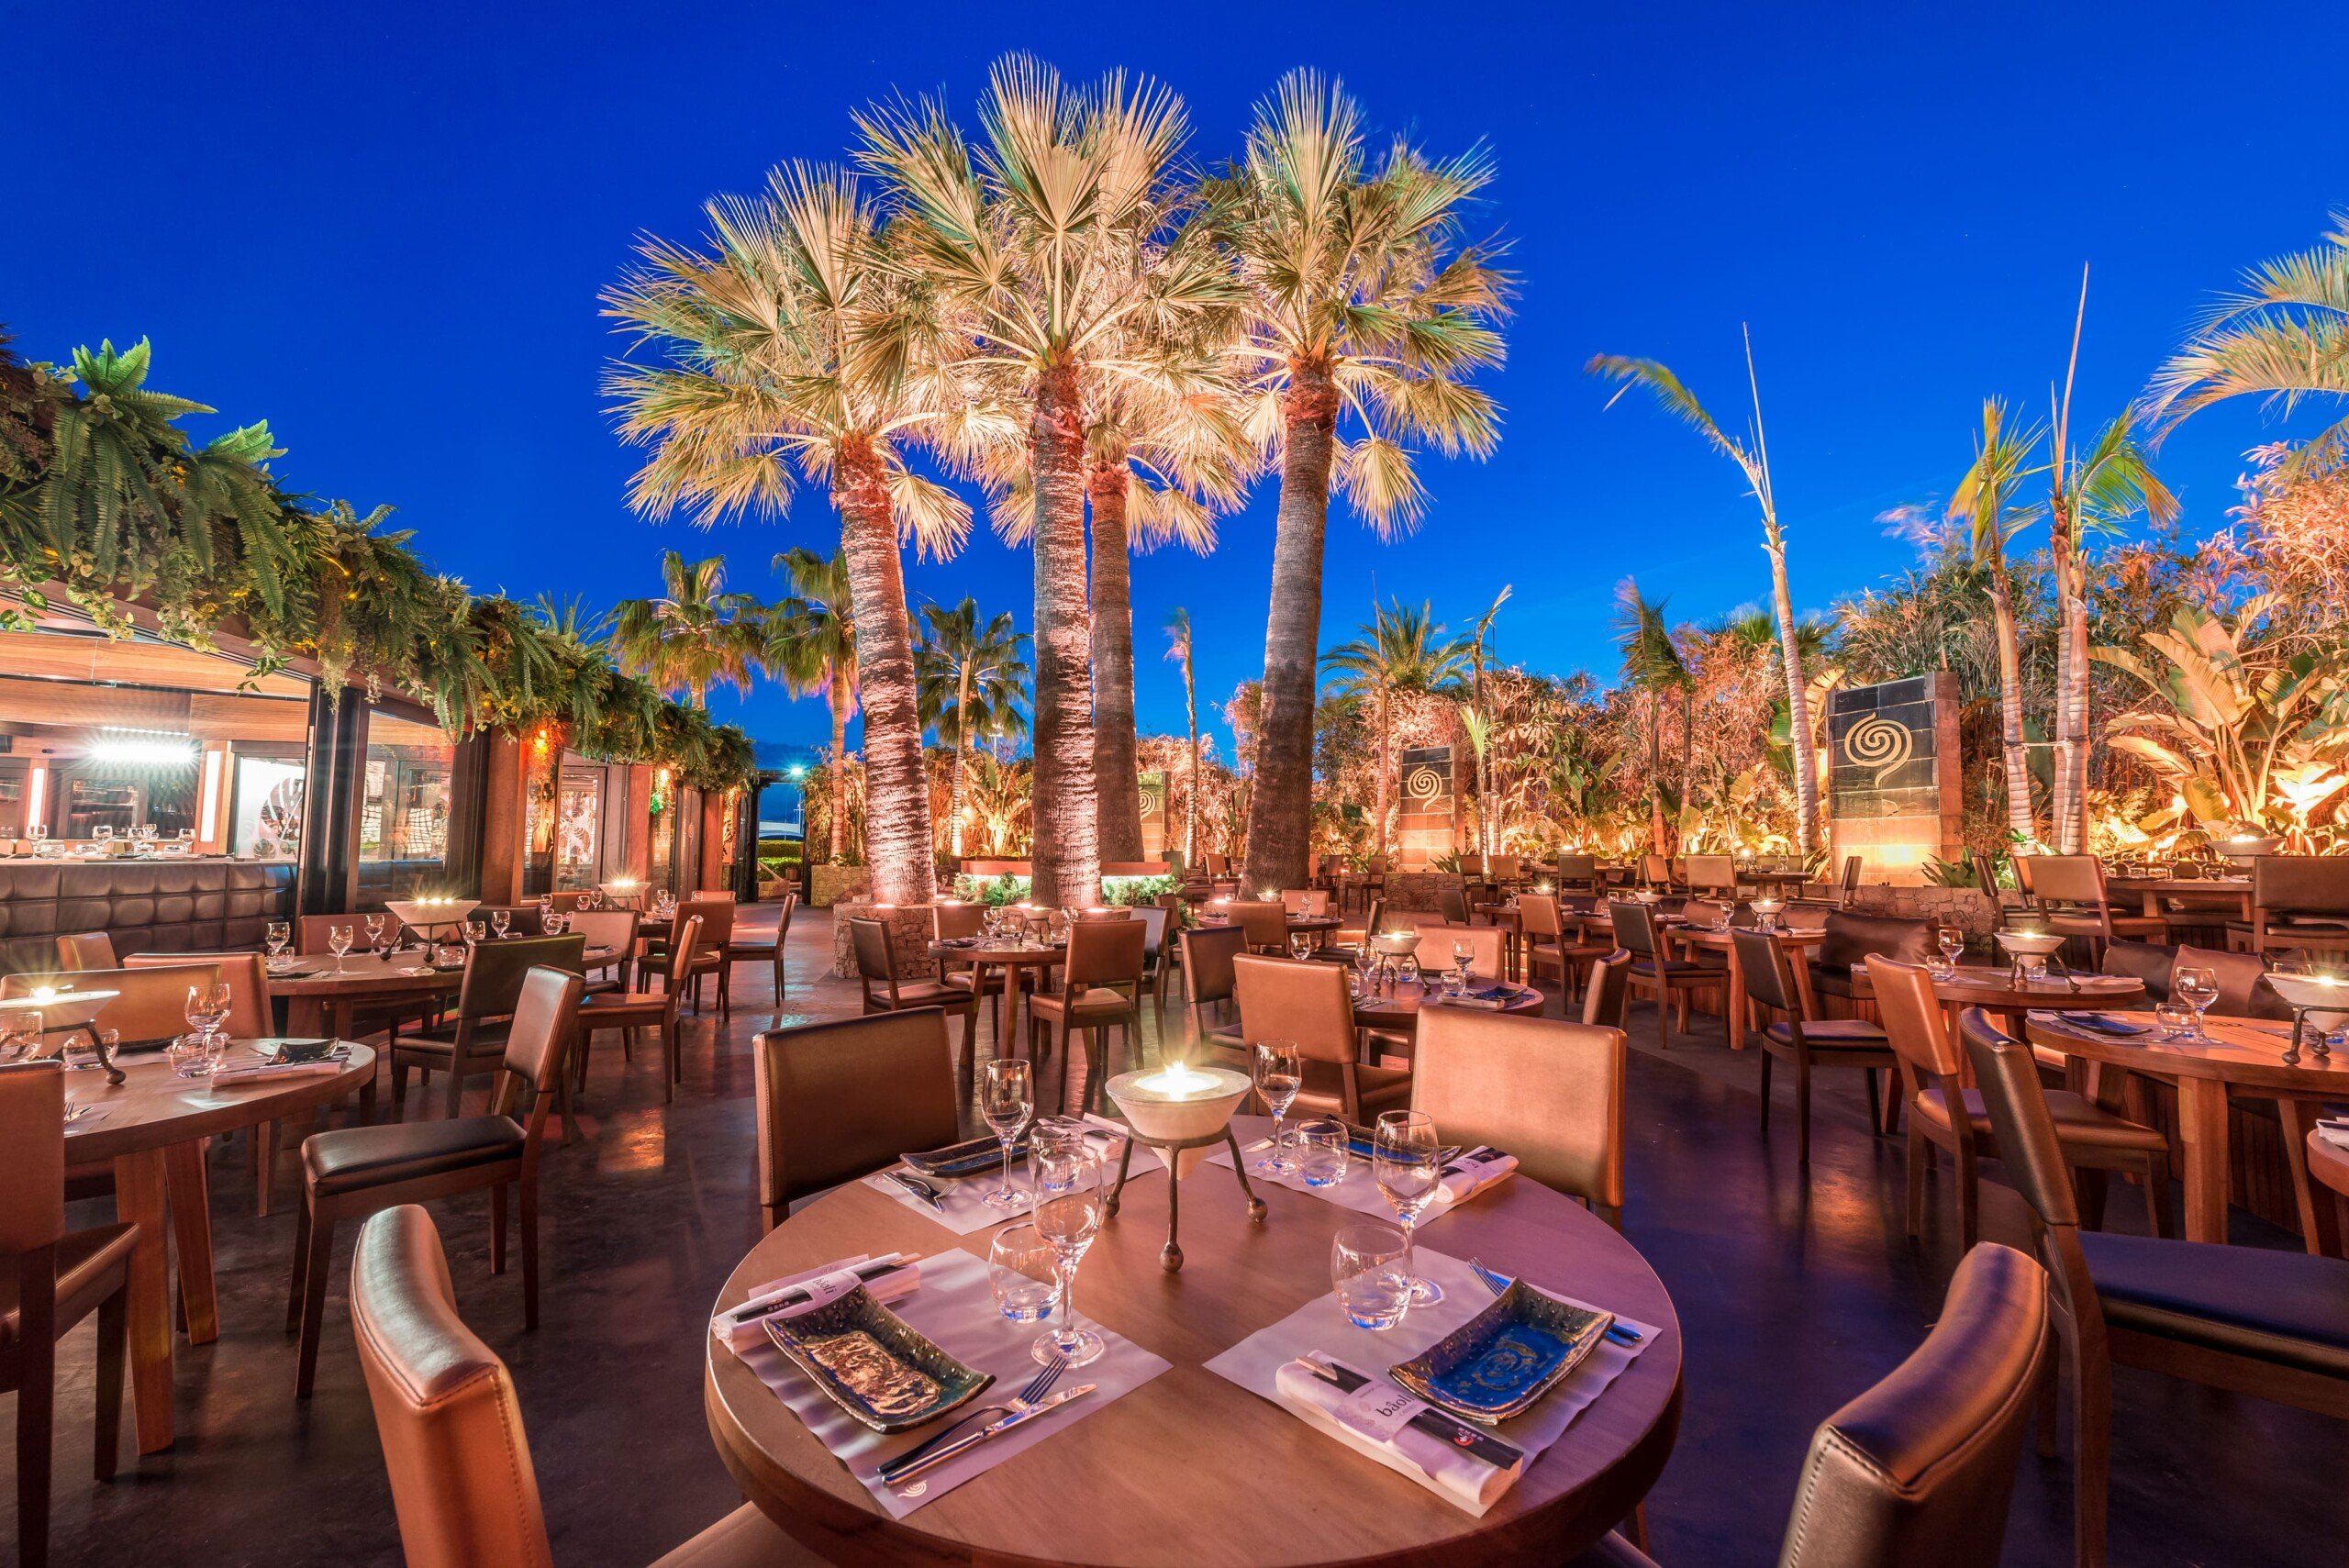 Lugares para comer em Cannes: comida internacional | Baôli Cannes | Conexão123